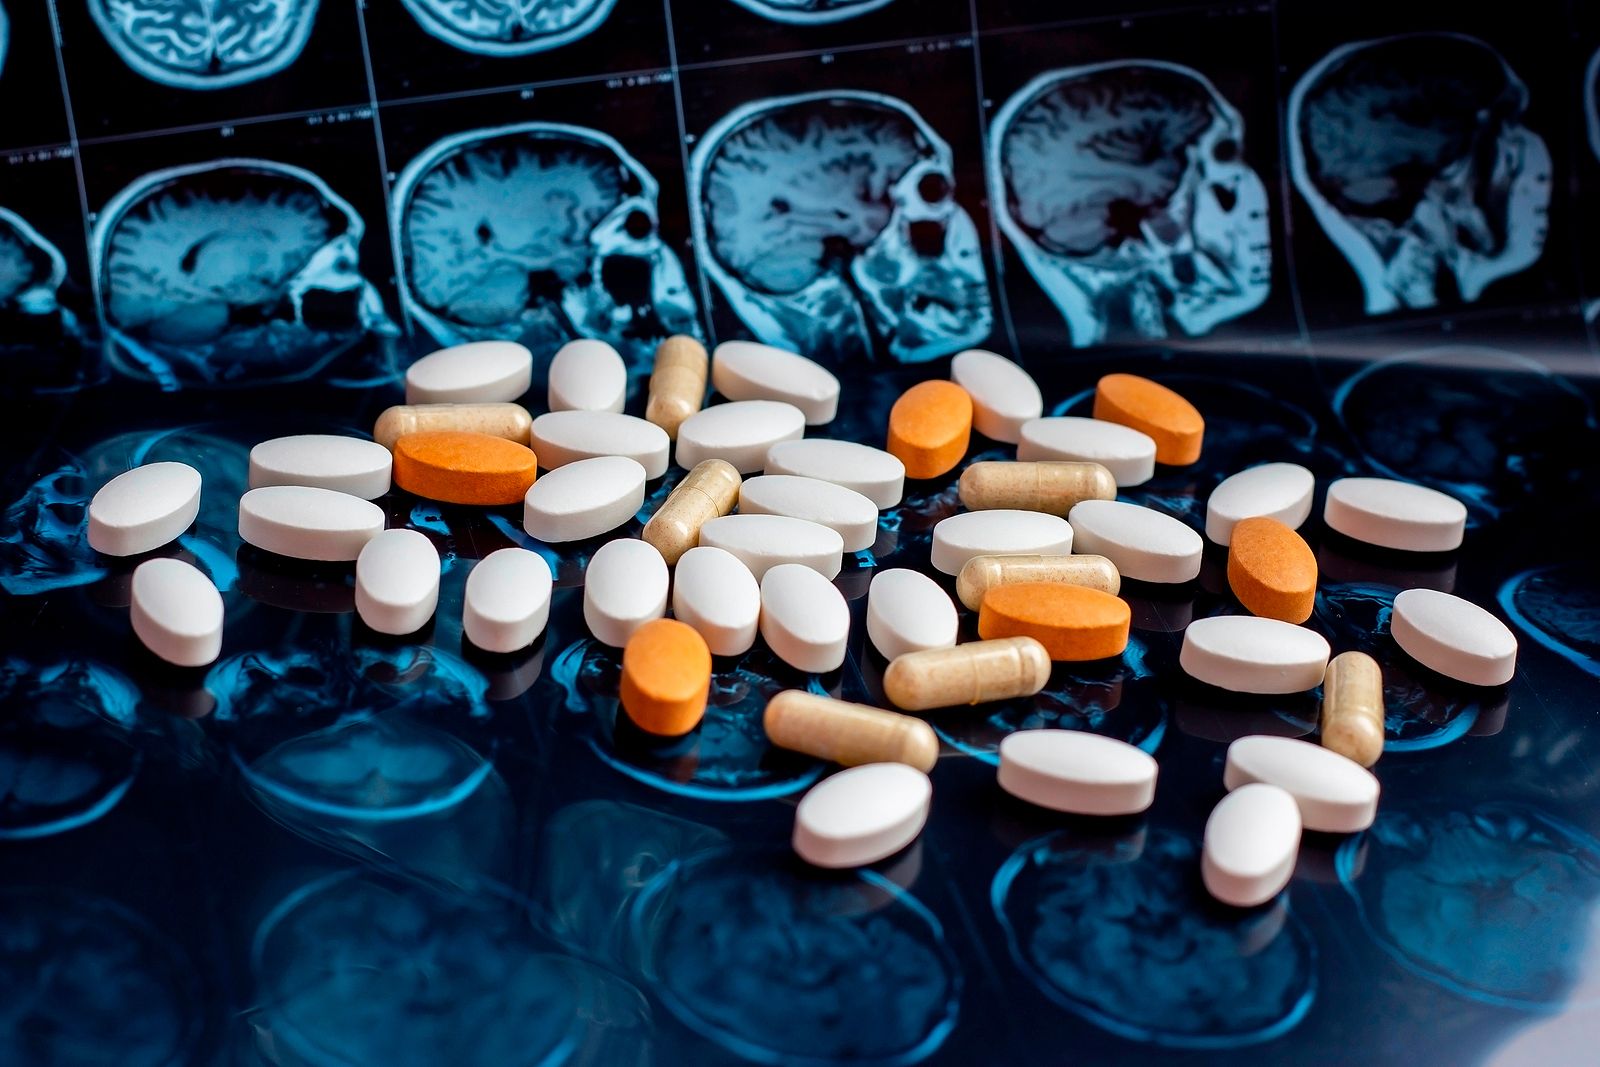 Europa rechaza autorizar Lecanemab, el medicamento que se comercializa en EEUU contra el alzhéimer